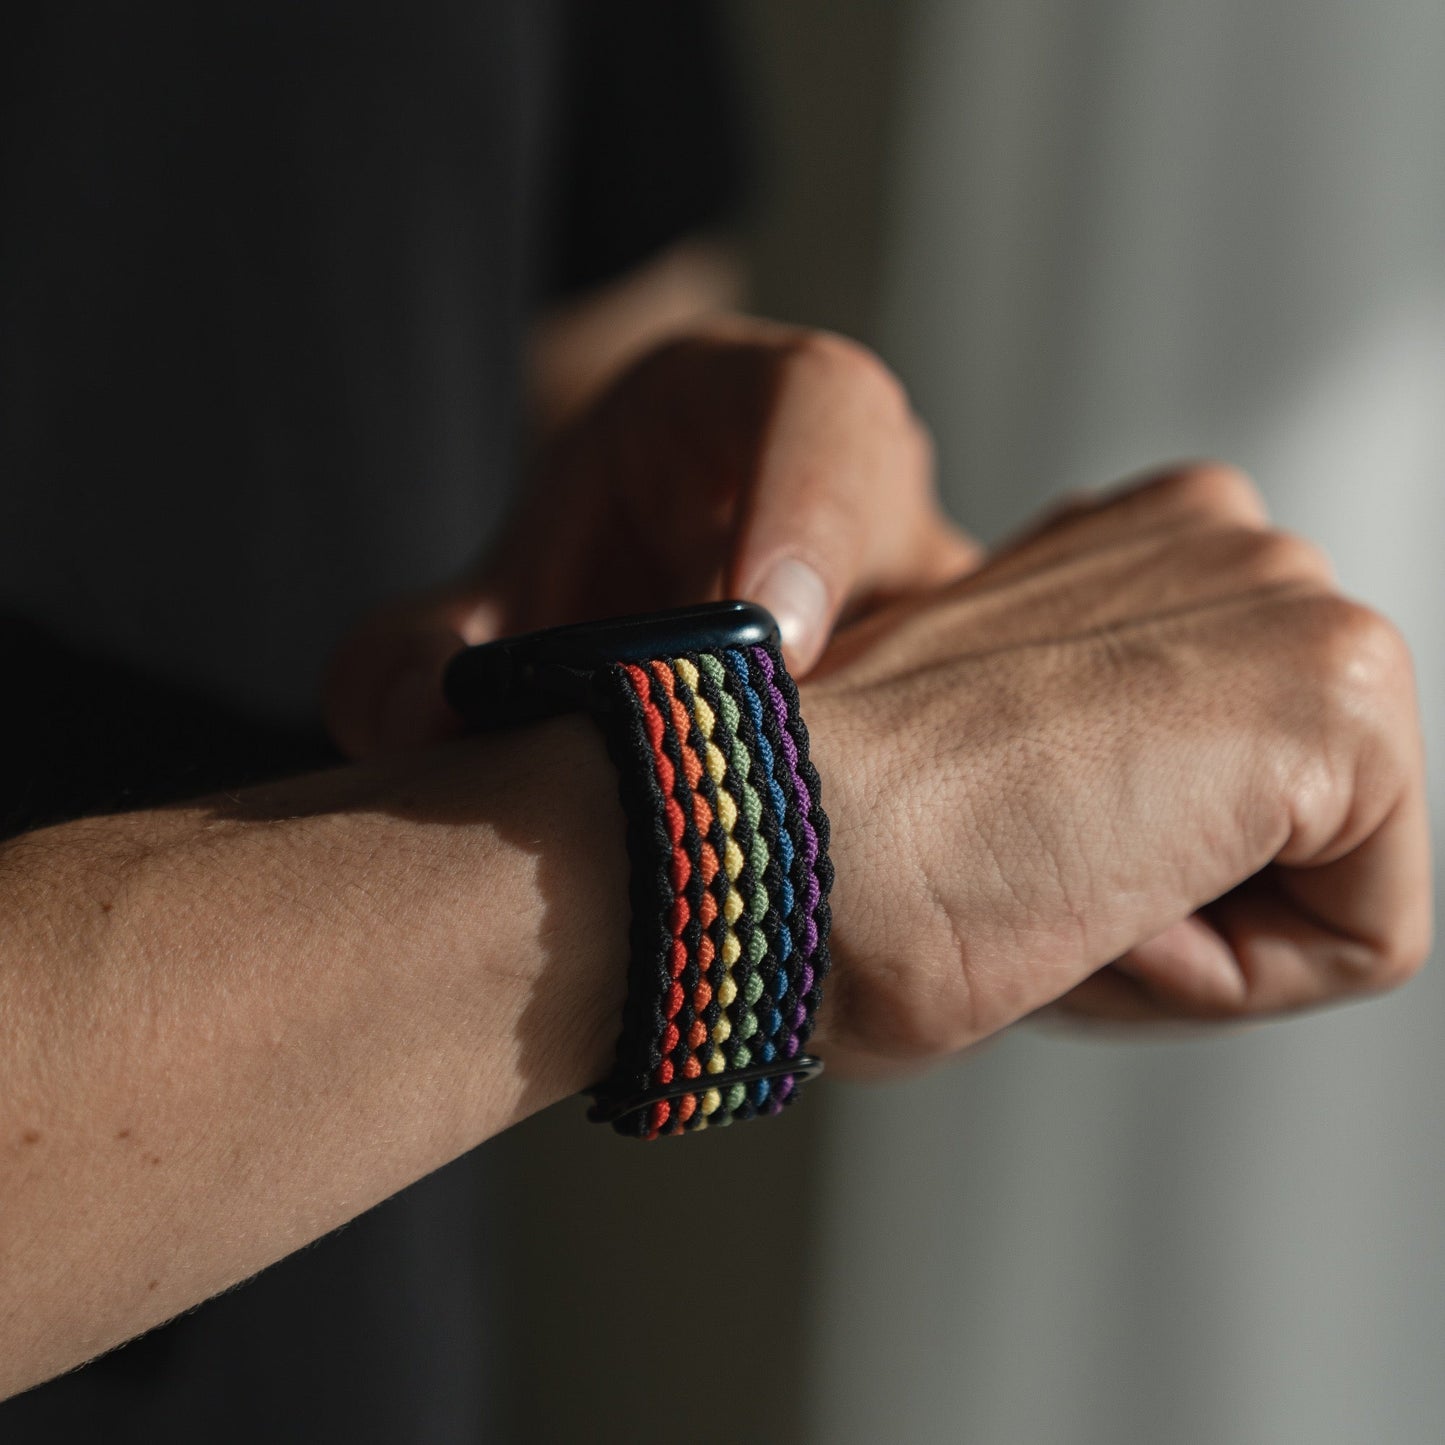 arktisband Apple Watch geflochtenes Flex Loop Pride Armband